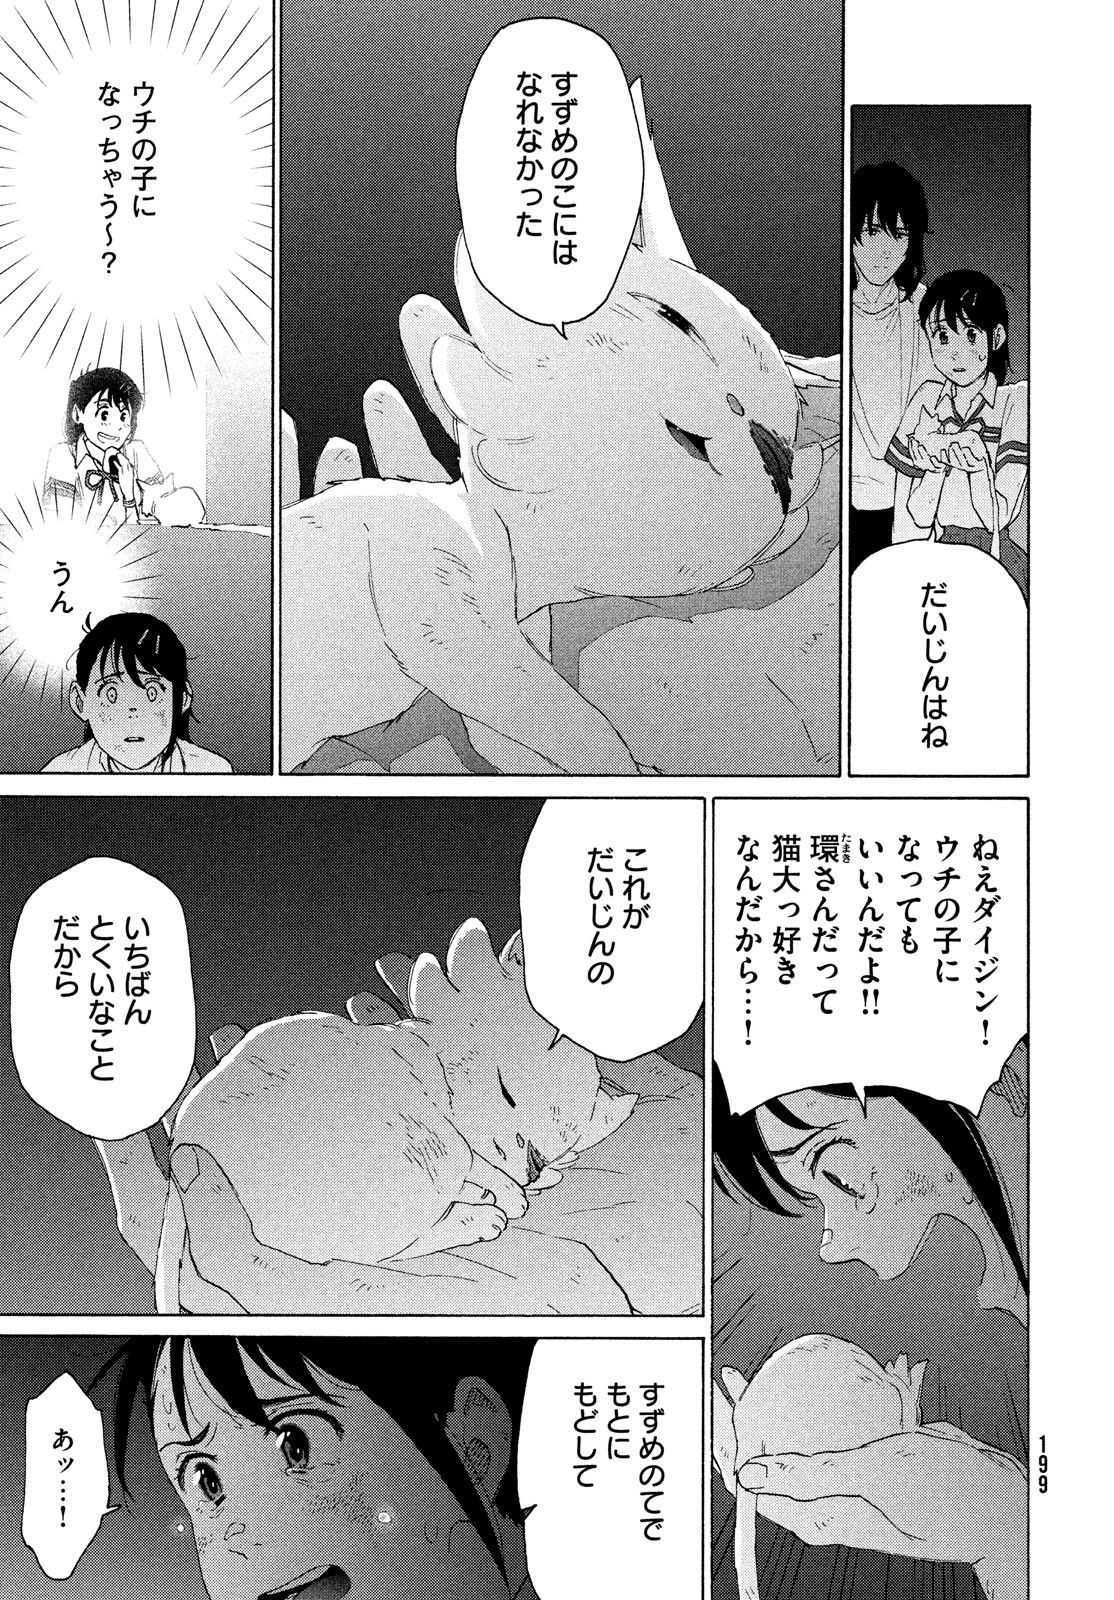 Suzume no Tojimari - Chapter 15 - Page 3